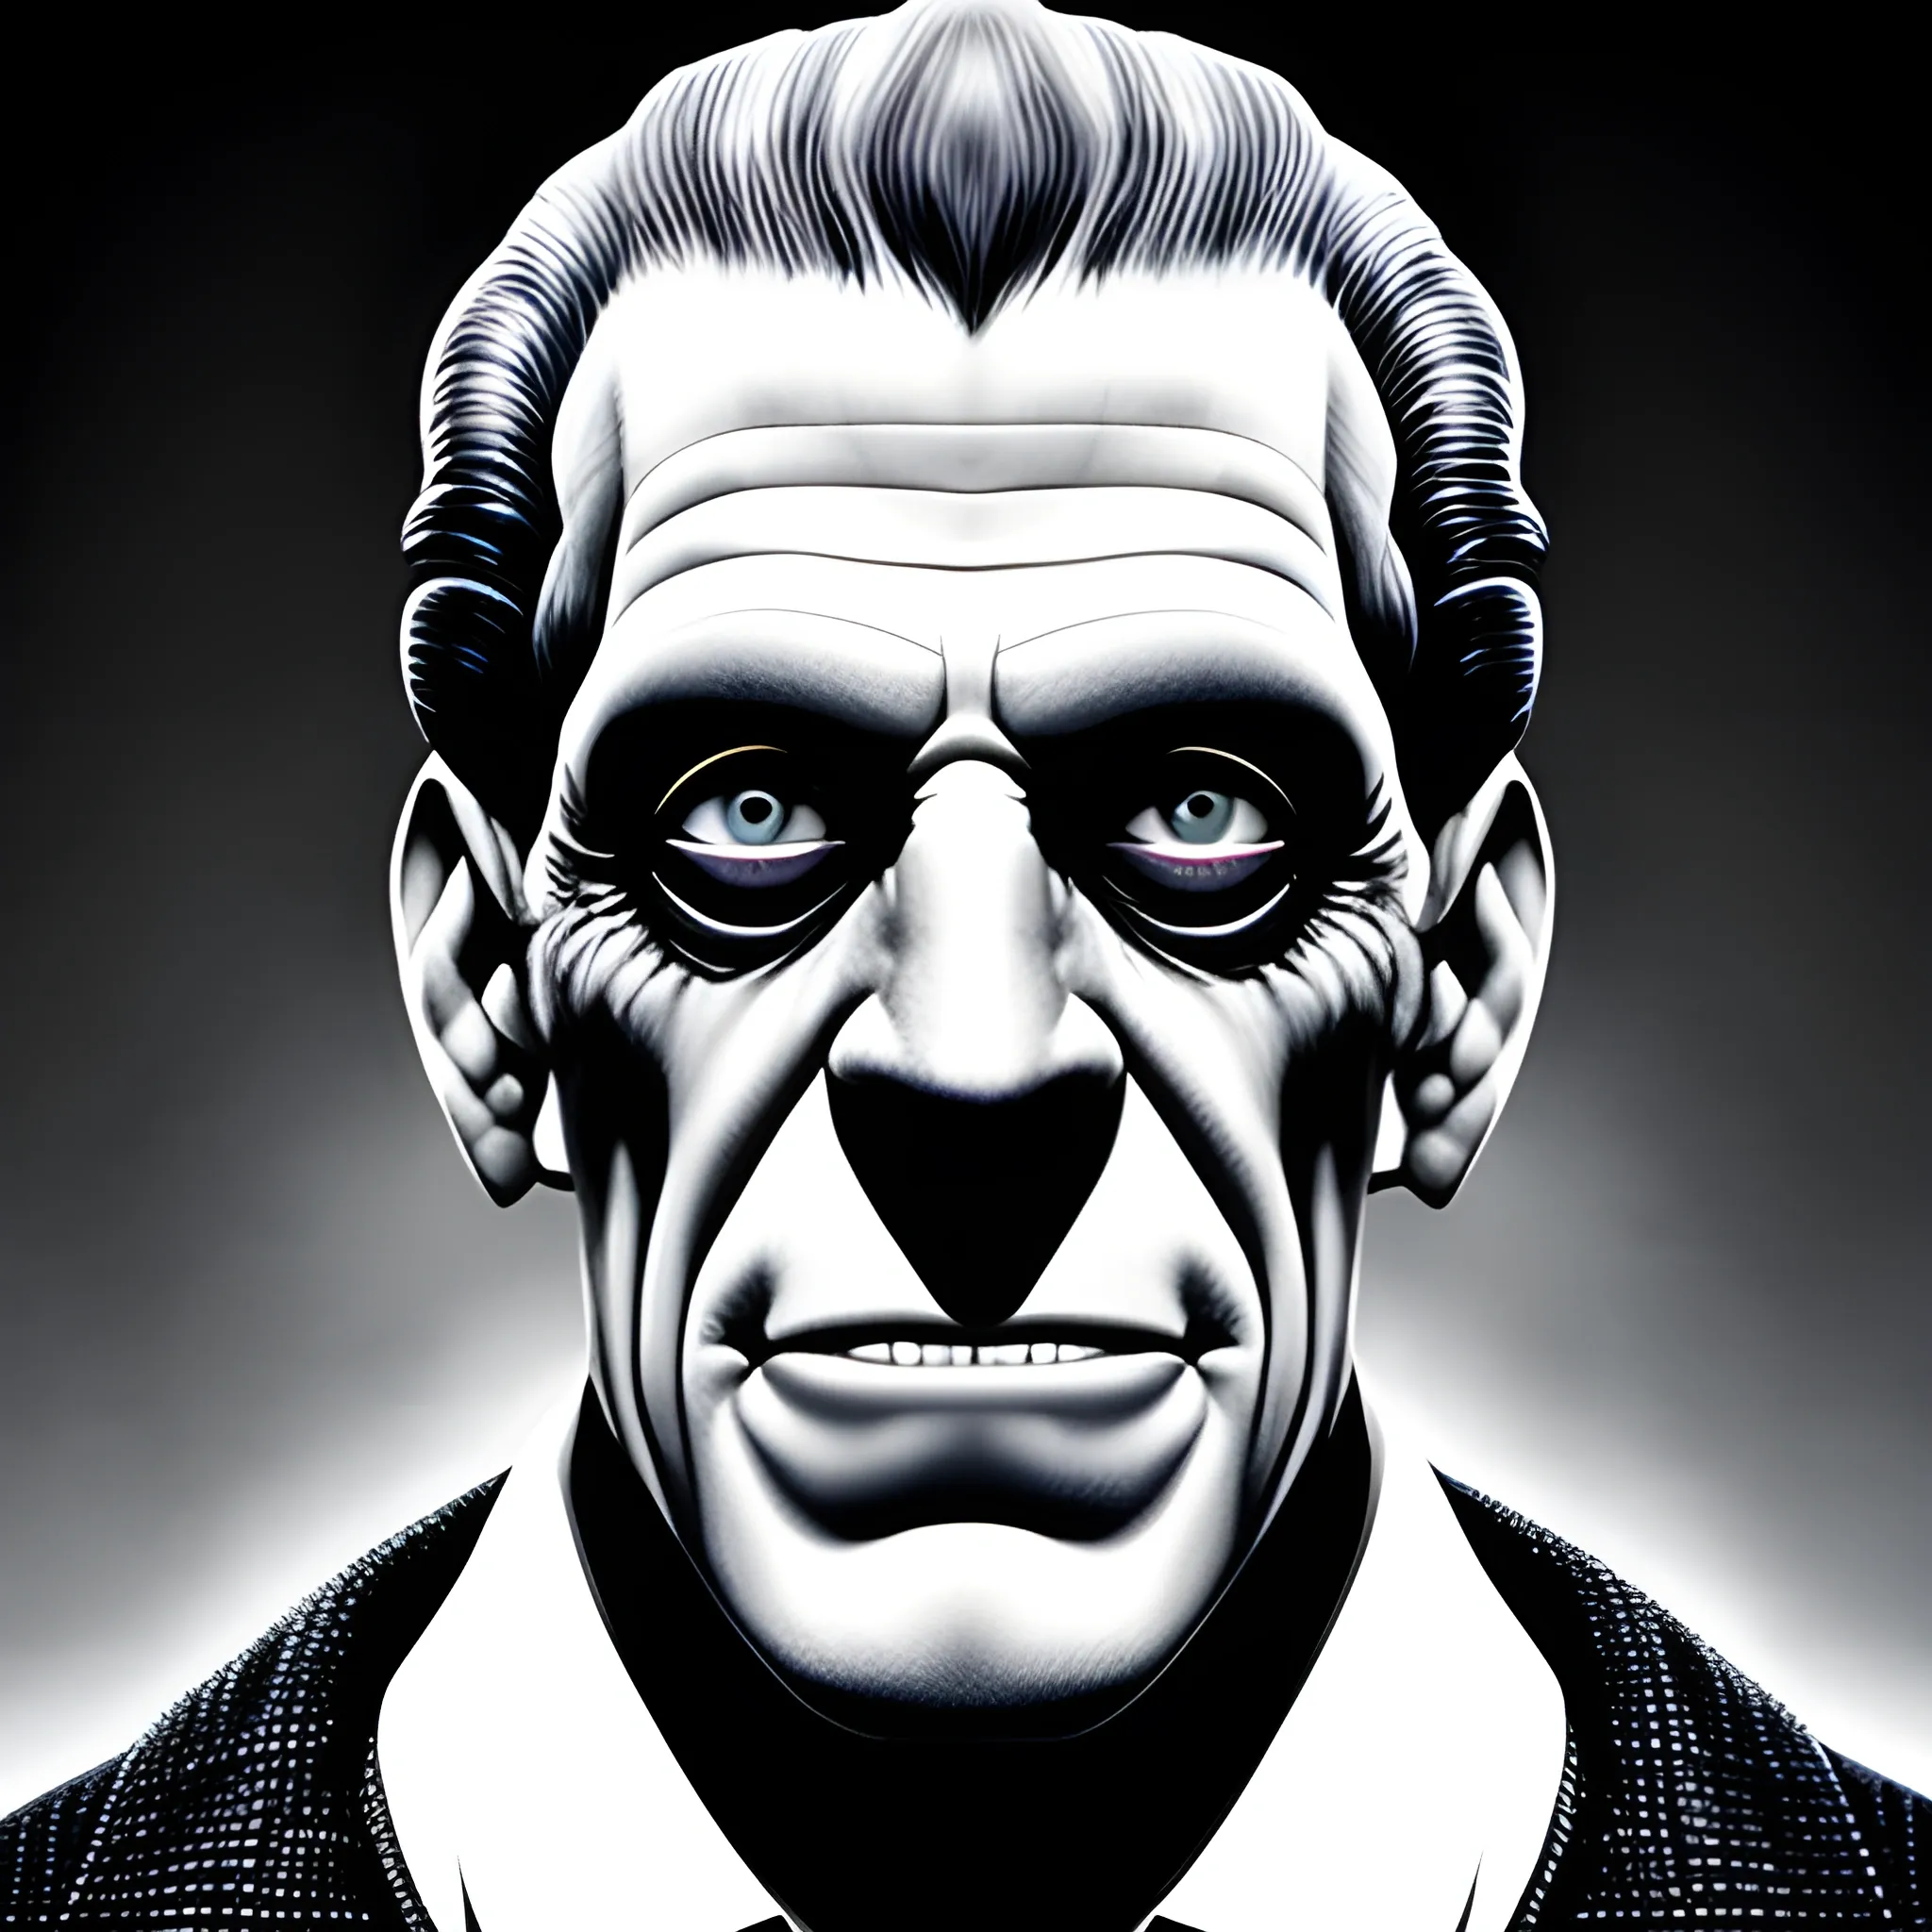 Fred gwynne young as Frankenstein portrait 